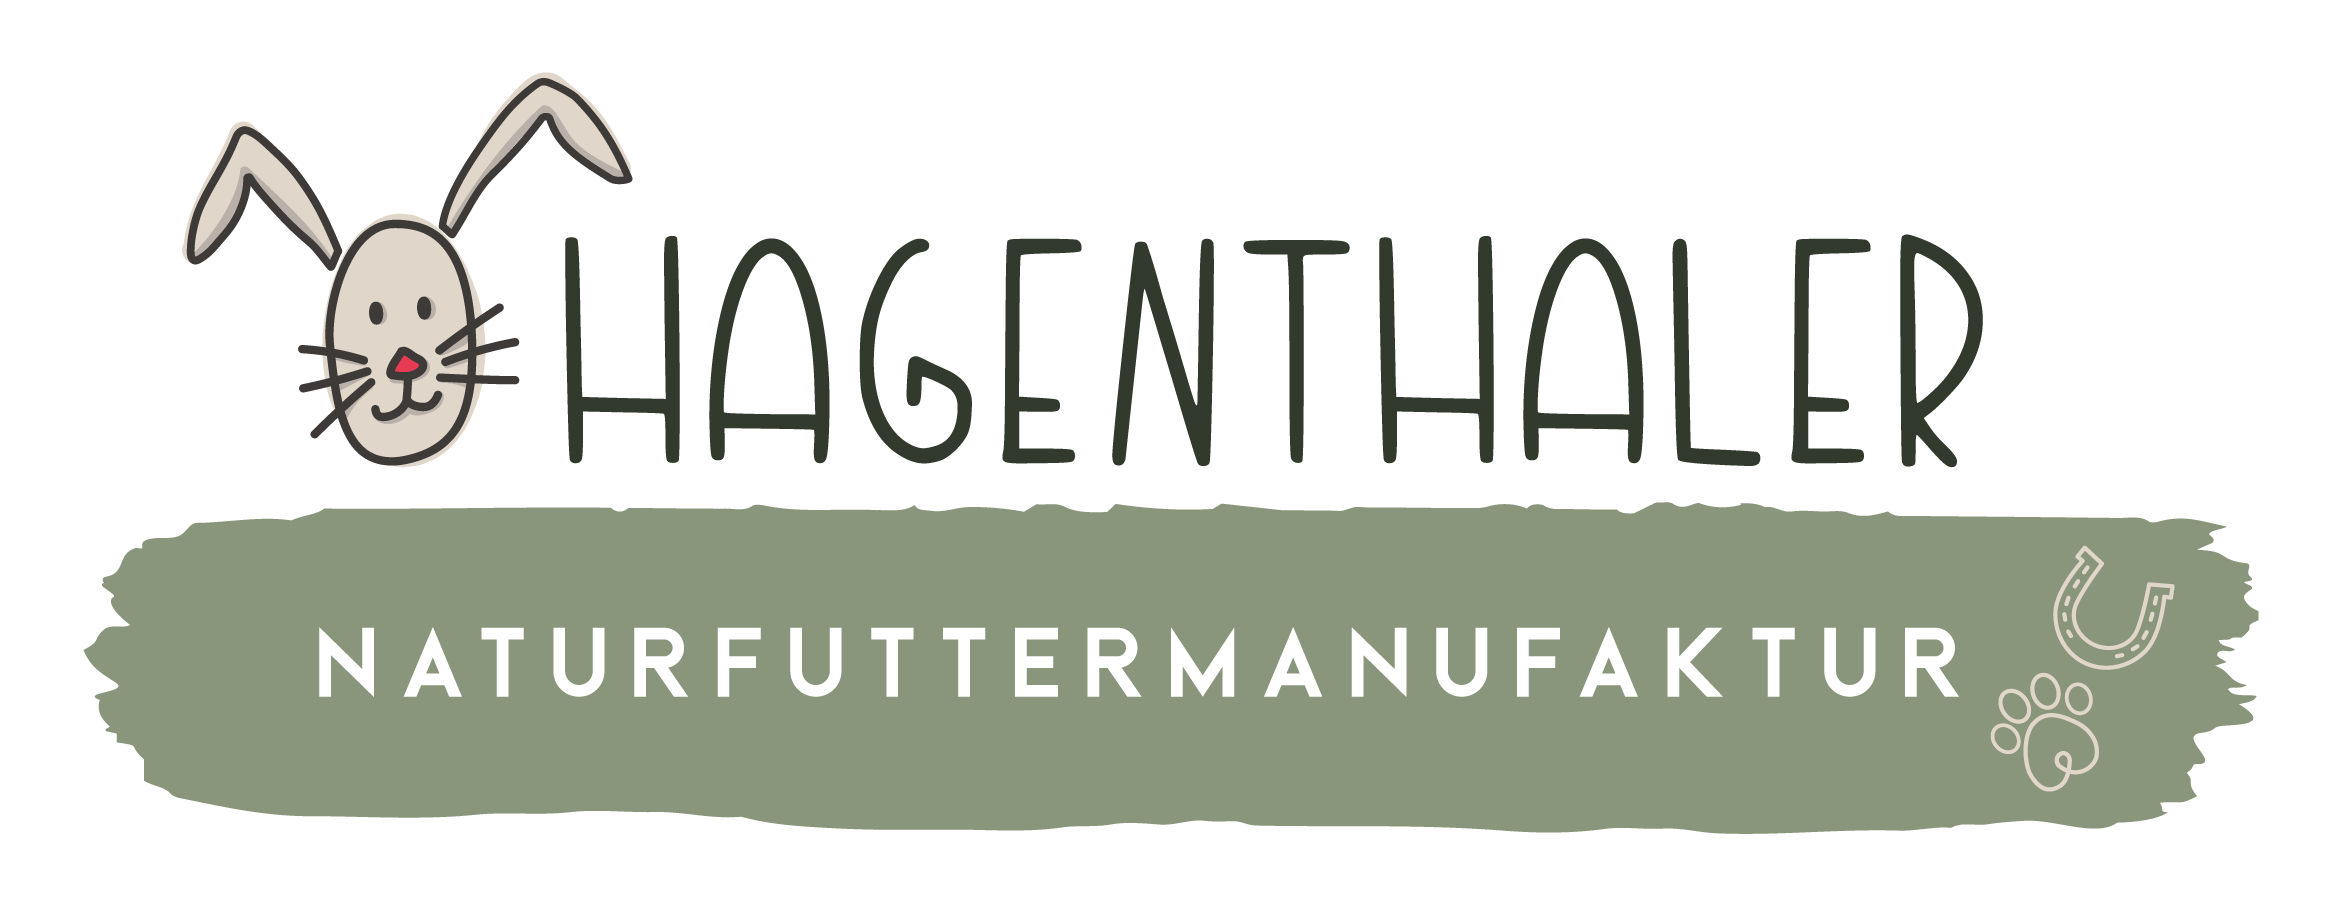 Hagenthaler Naturfuttermanufaktur-Logo